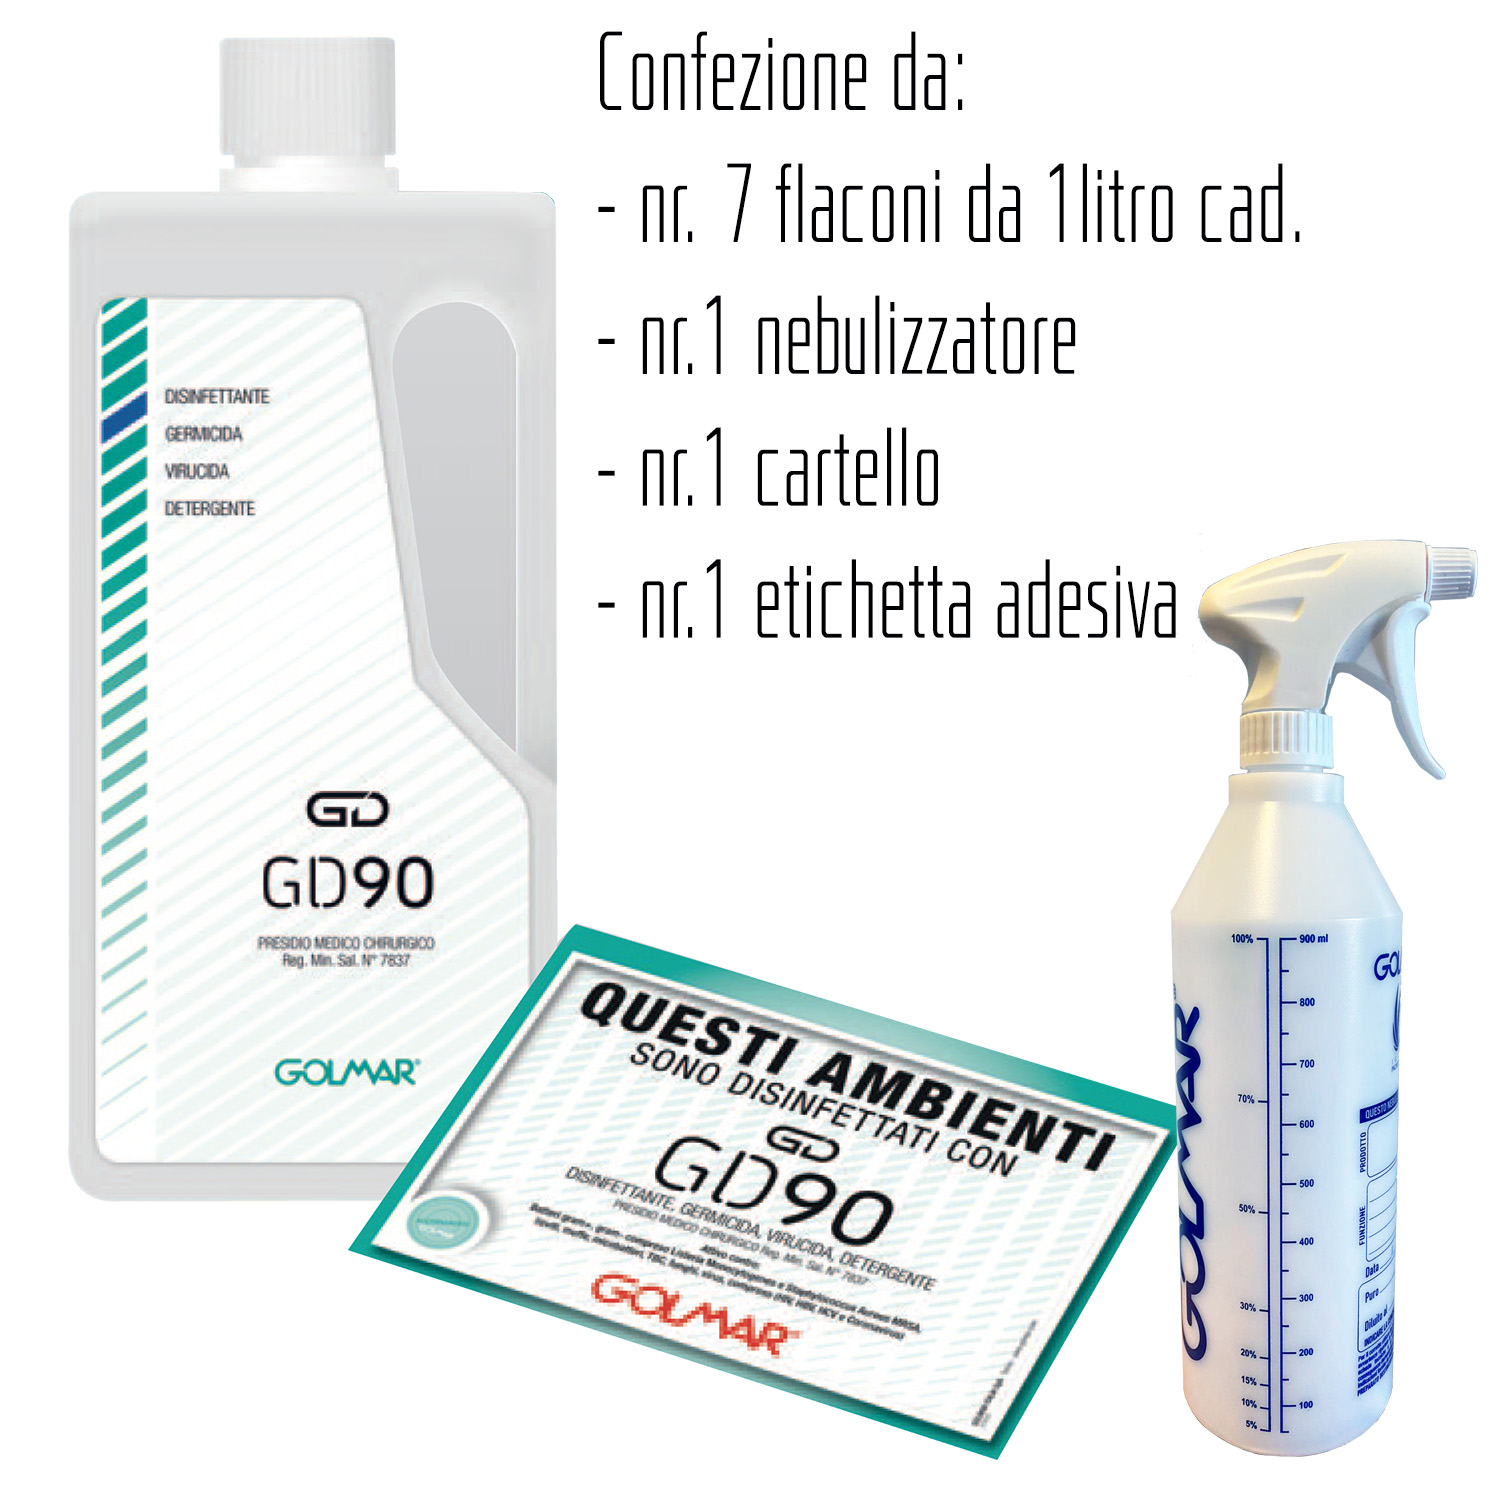 GOLMAR GD90 liquido 1 litro - PMC disinfettante professionale ad ampio spettro (virucida incluso Coronavirus, battericida e levuricida) – confezione da  7 flaconi da 1litro cad.,  n.1 nebulizzatore, n.1 cartello n.1 etichetta